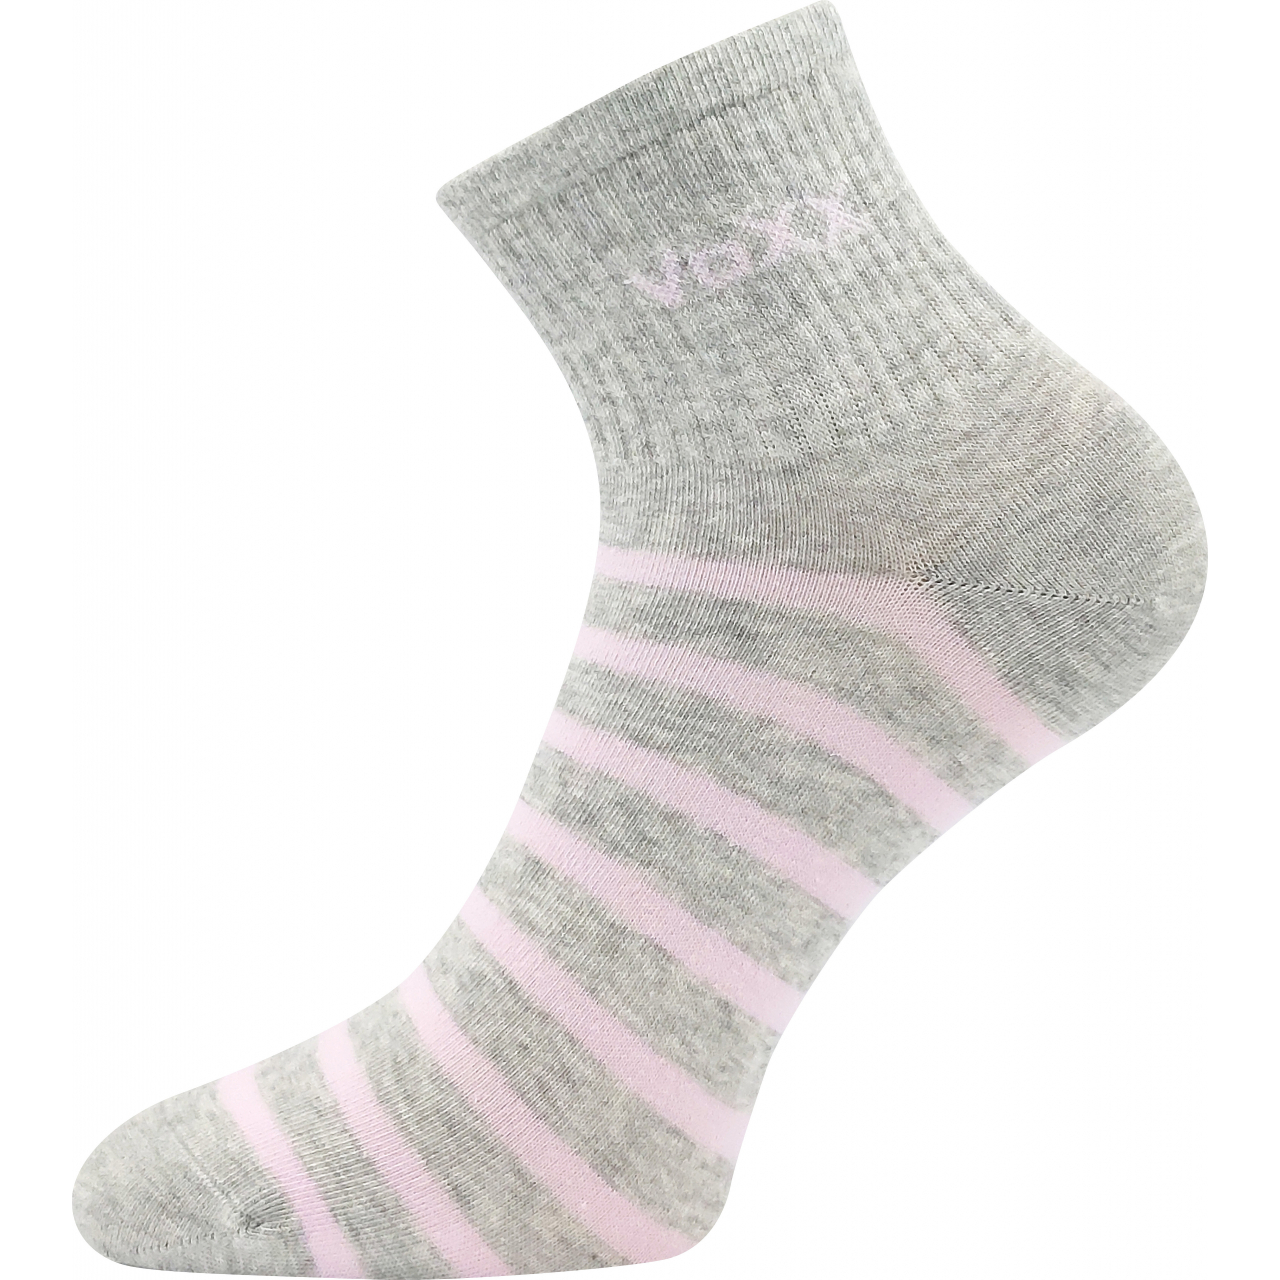 Ponožky dámské klasické Voxx Boxana Pruhy - světle šedé-růžové, 35-38